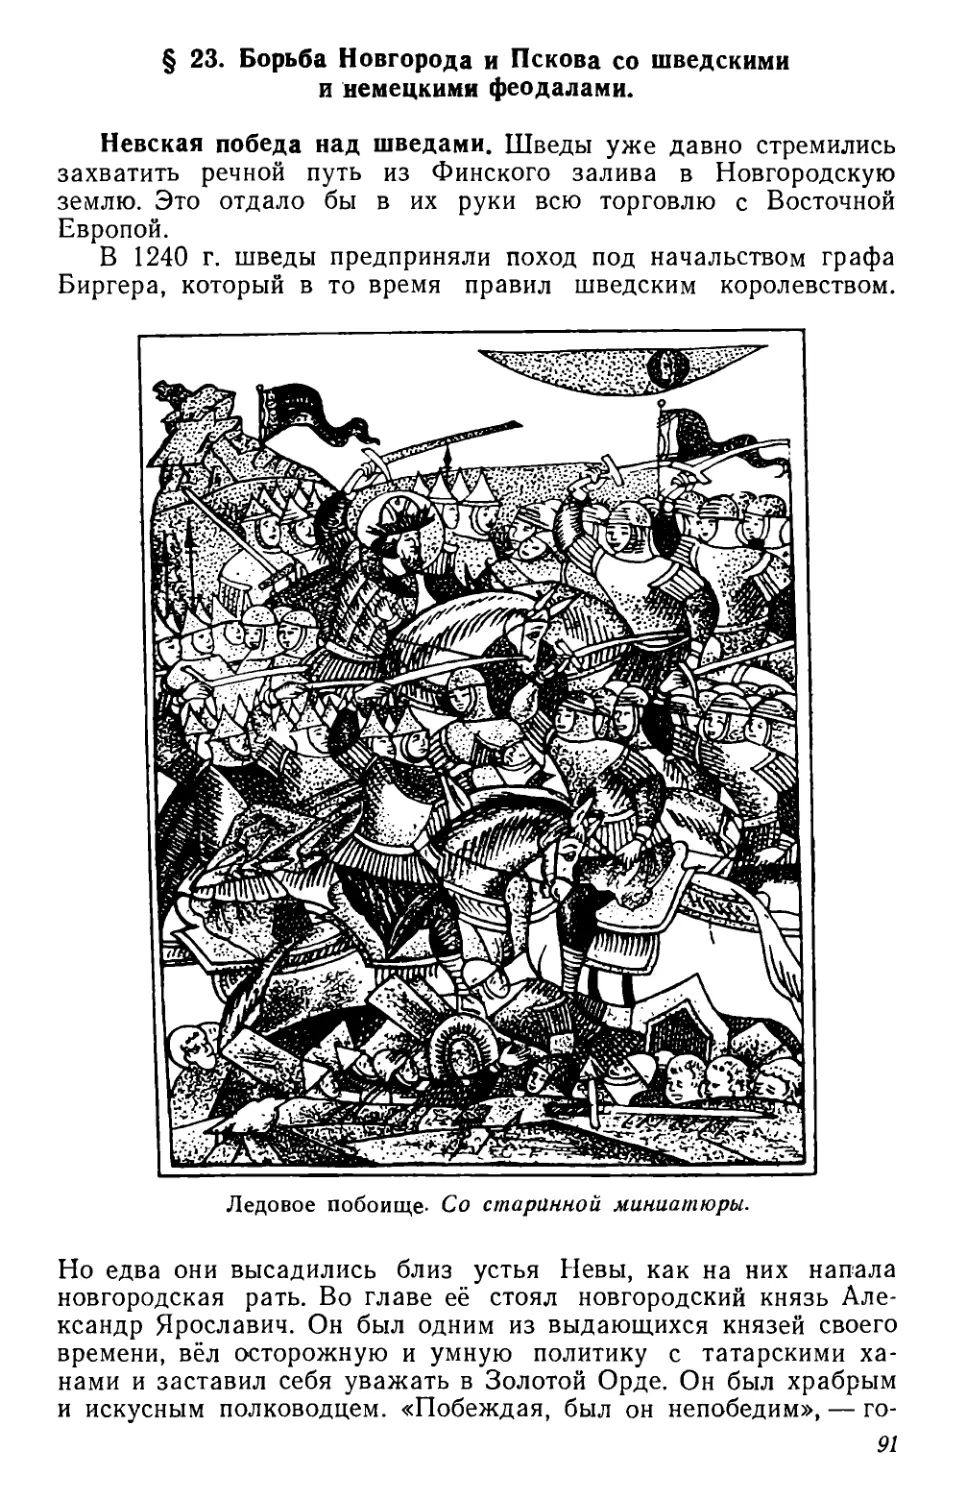 § 23. Борьба Новгорода и Пскова со шведскими и немецкими феодалами